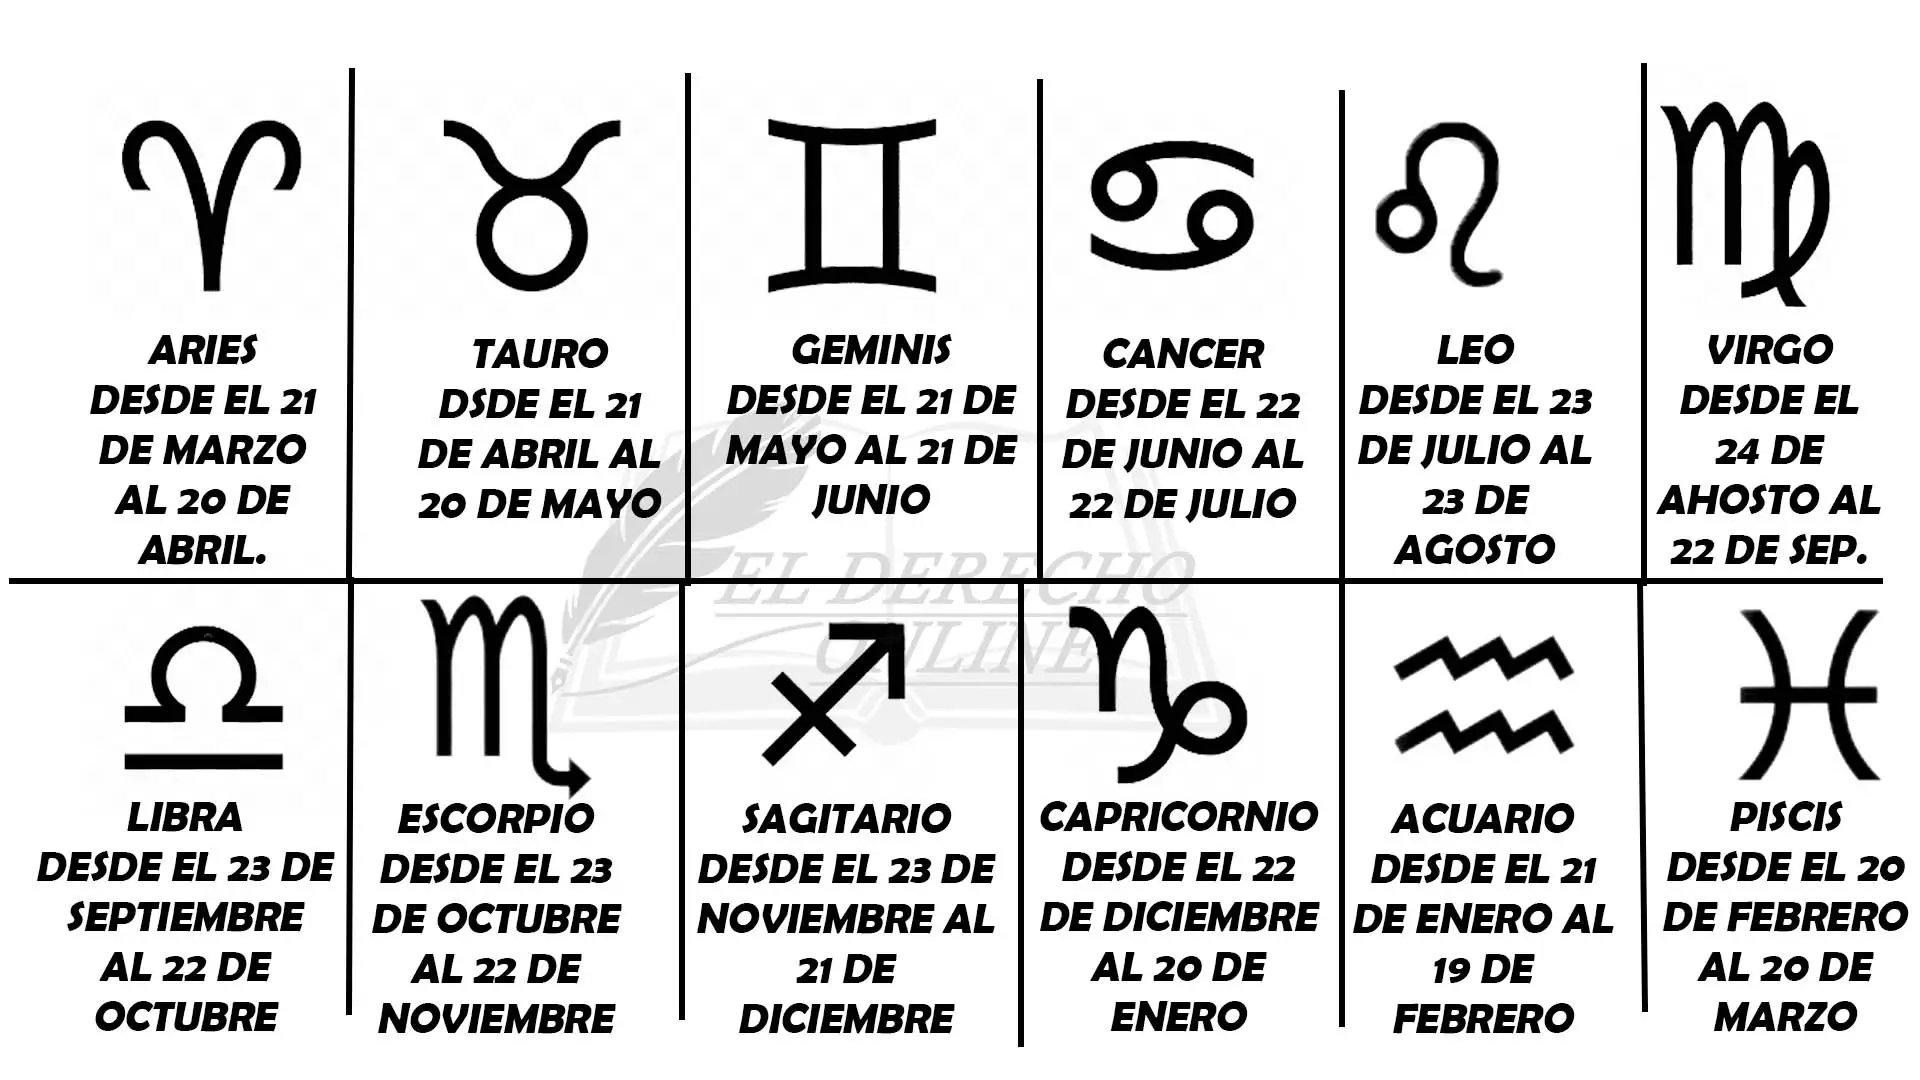 Signos zodiacales del mes de septiembre de 2009 ¿Cuáles son?